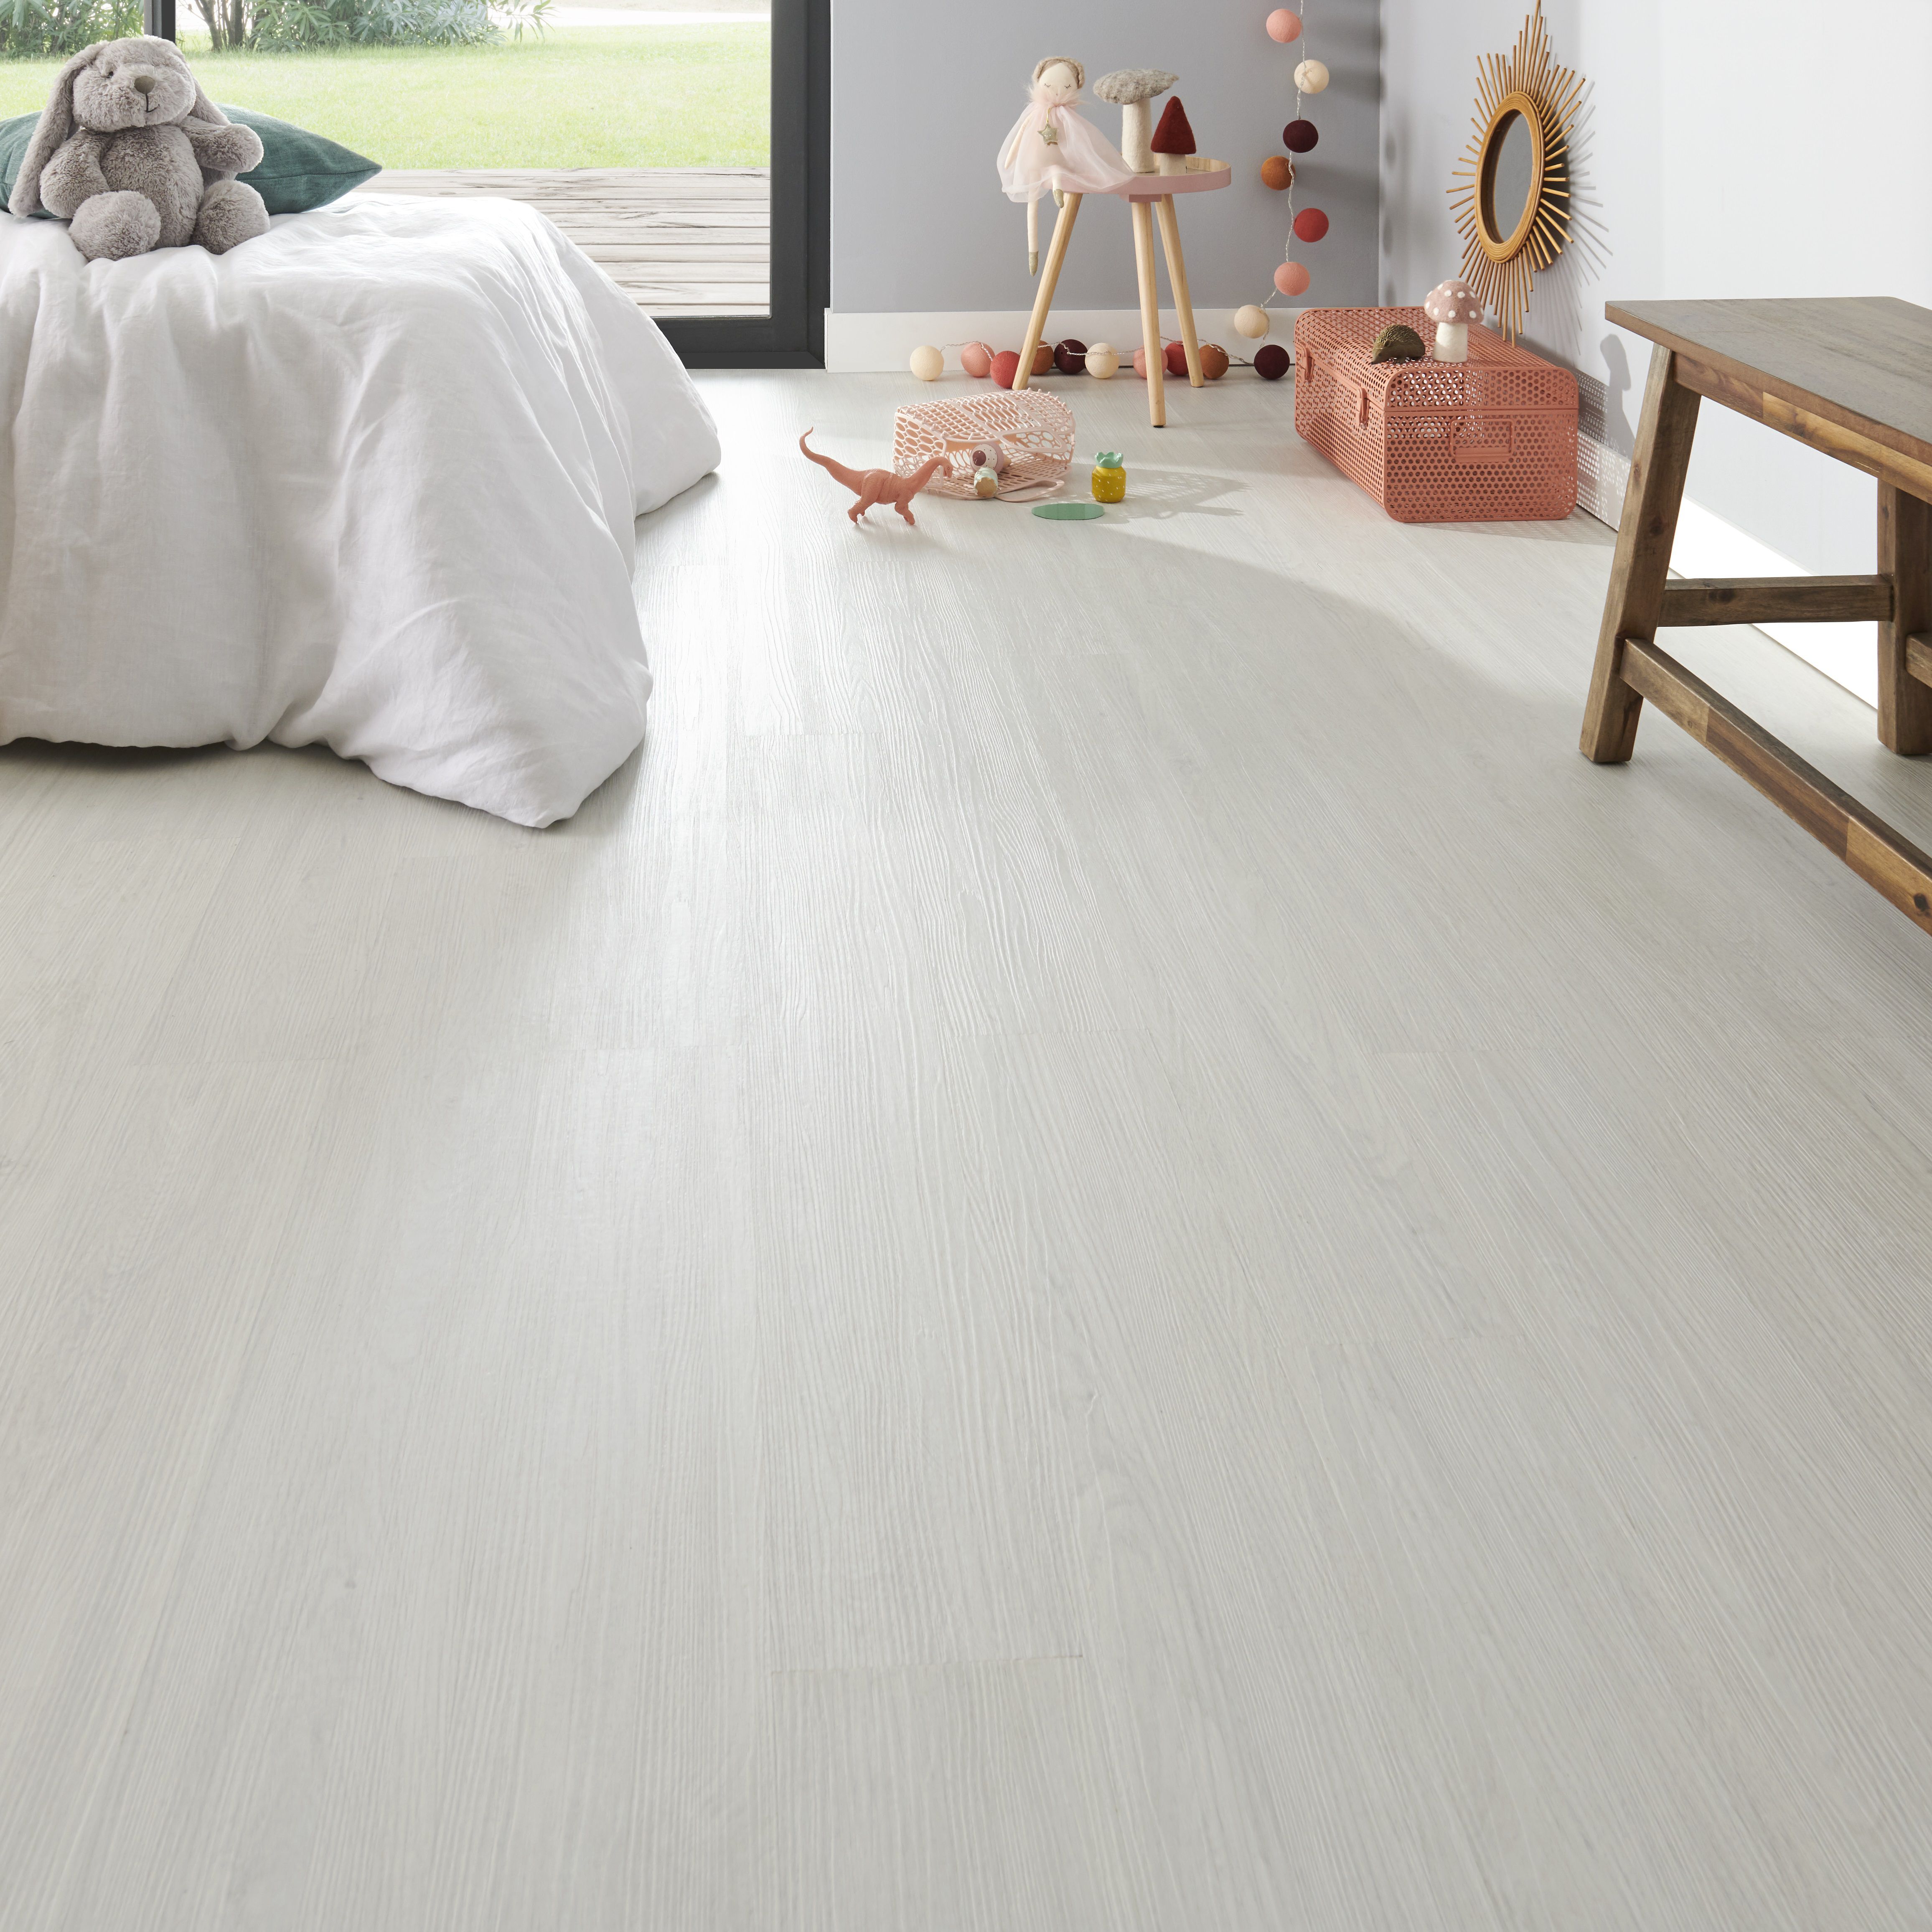 FOLK White Wood effect Luxury vinyl tile, 2.24m² Pack | at B&Q